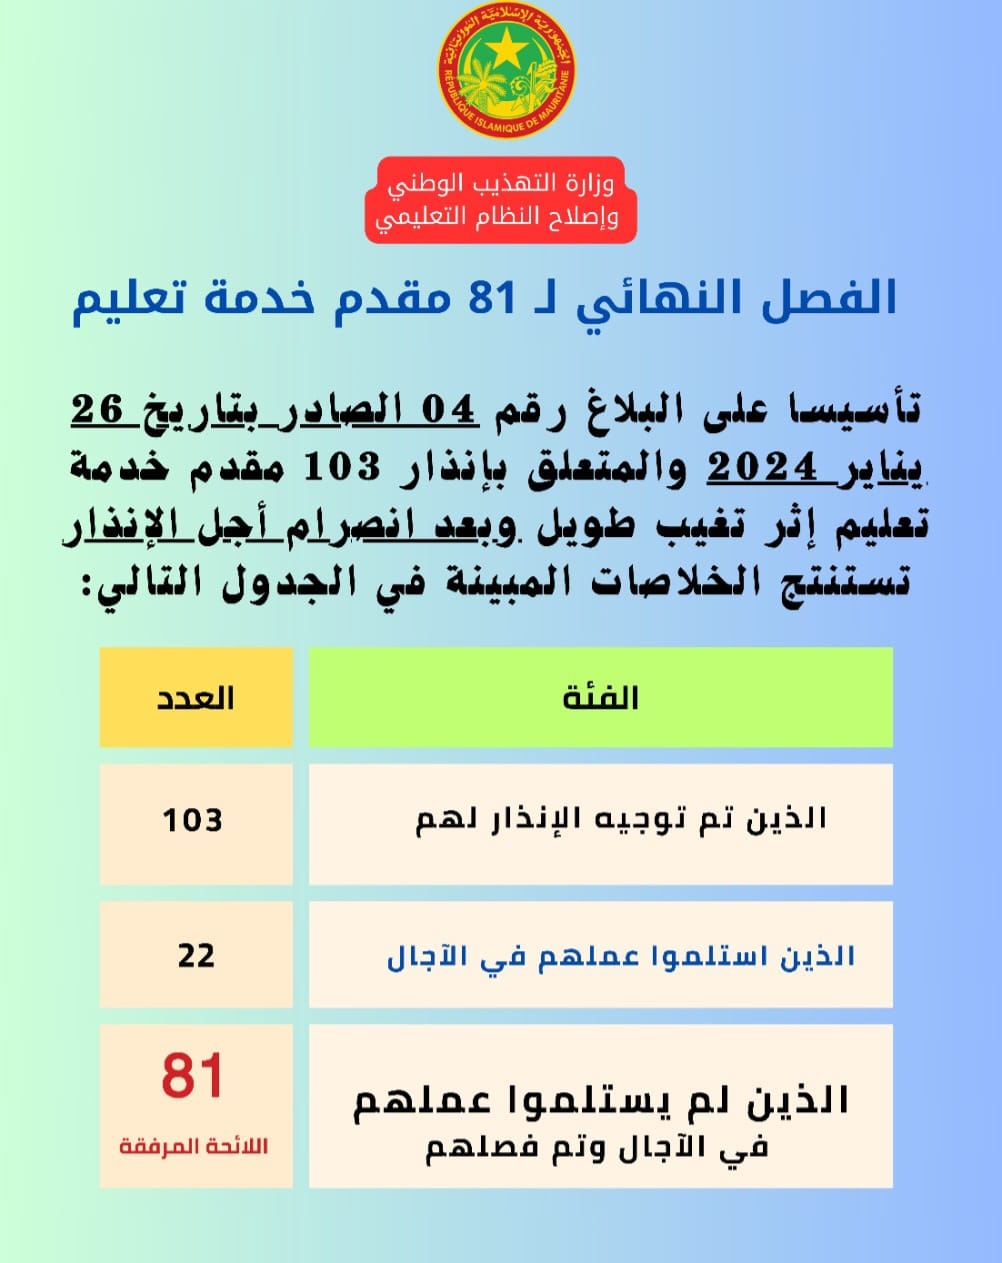 وزارة التهذيب تنشر أسماء الـ81 مقدم خدمة تعليم الذين (...)